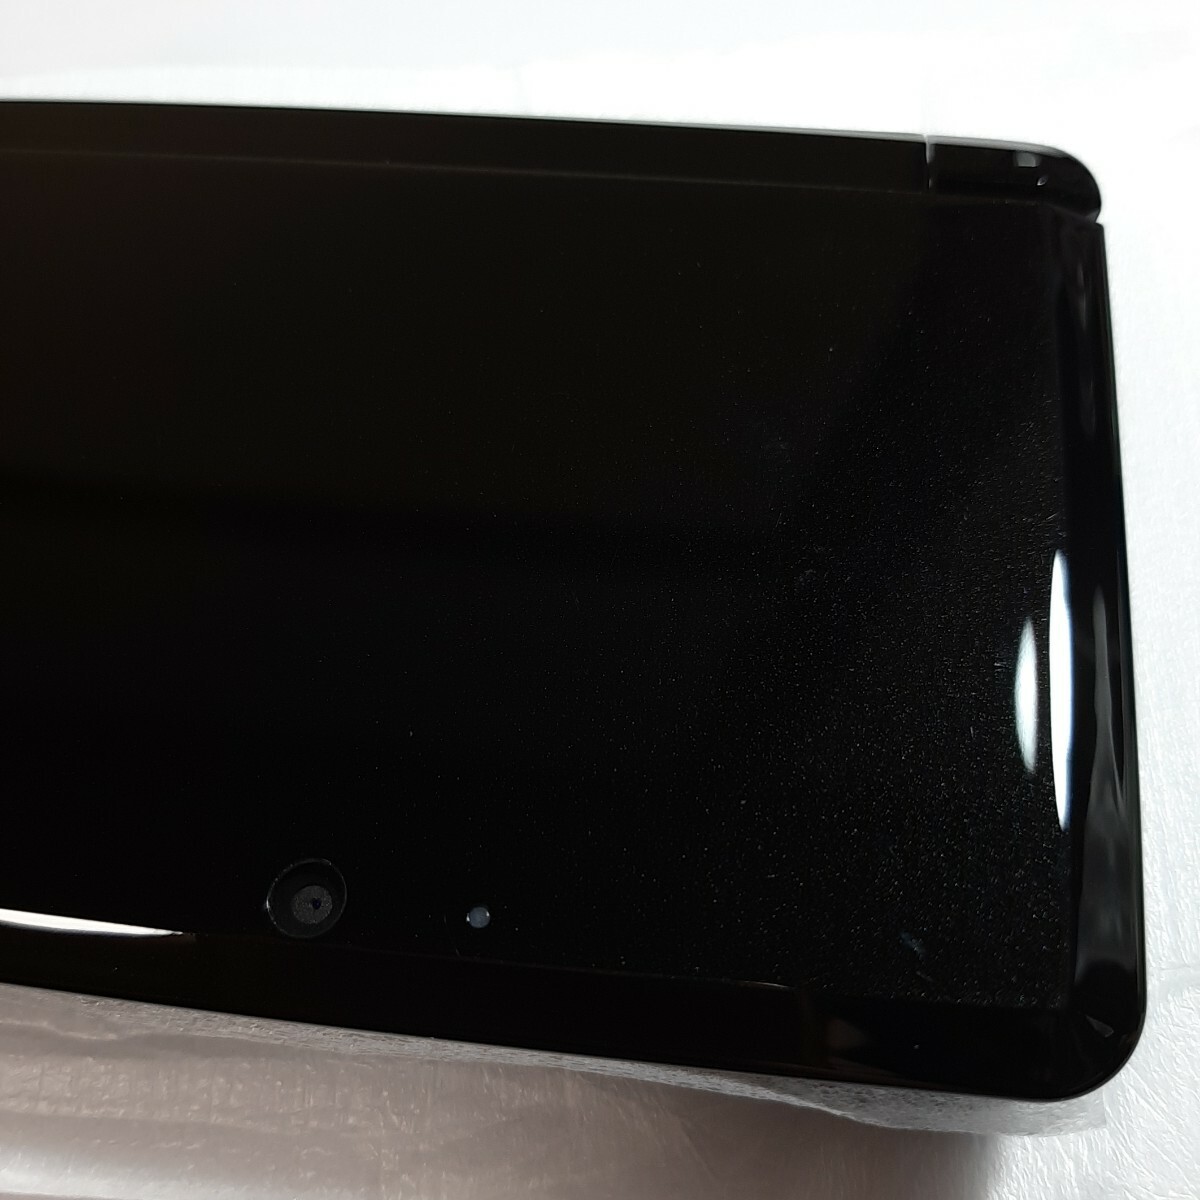 ニンテンドー3DS Nintendo3DS クリアブラック 本体 箱付き 完備品_画像2